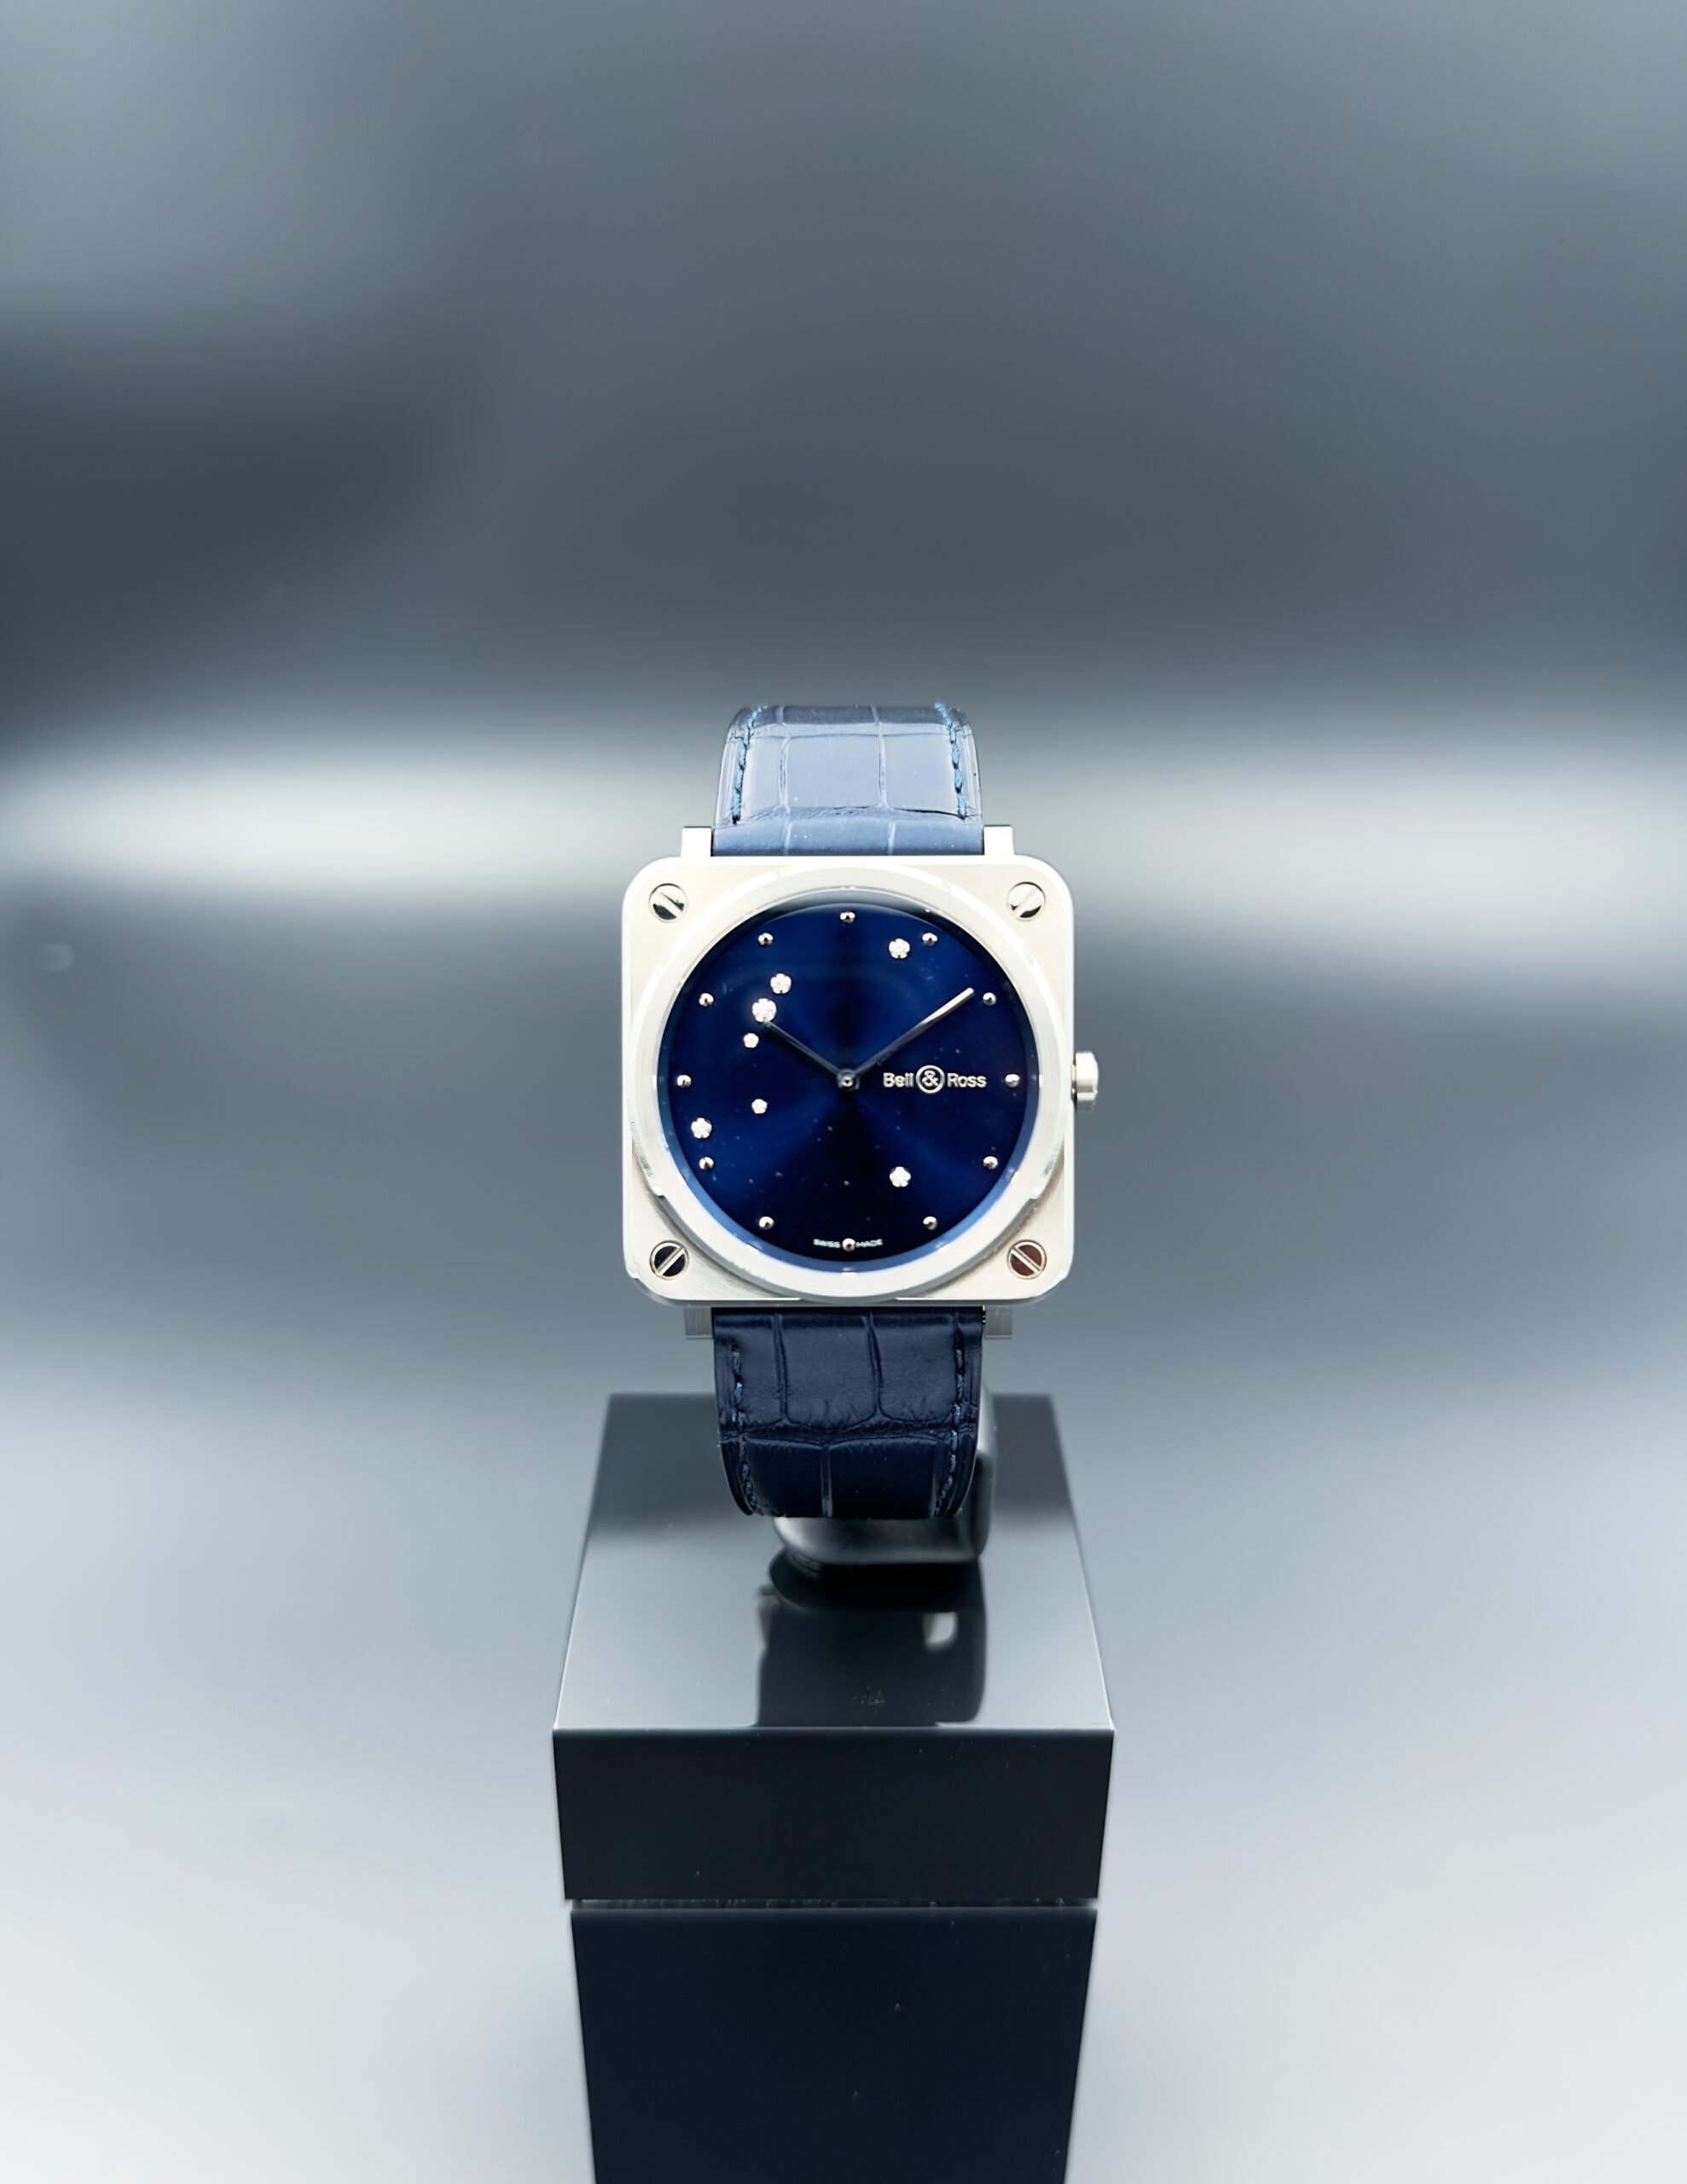 Montre Occasion BR S Quartz Bell & Ross - Dumas Joaillier Horloger